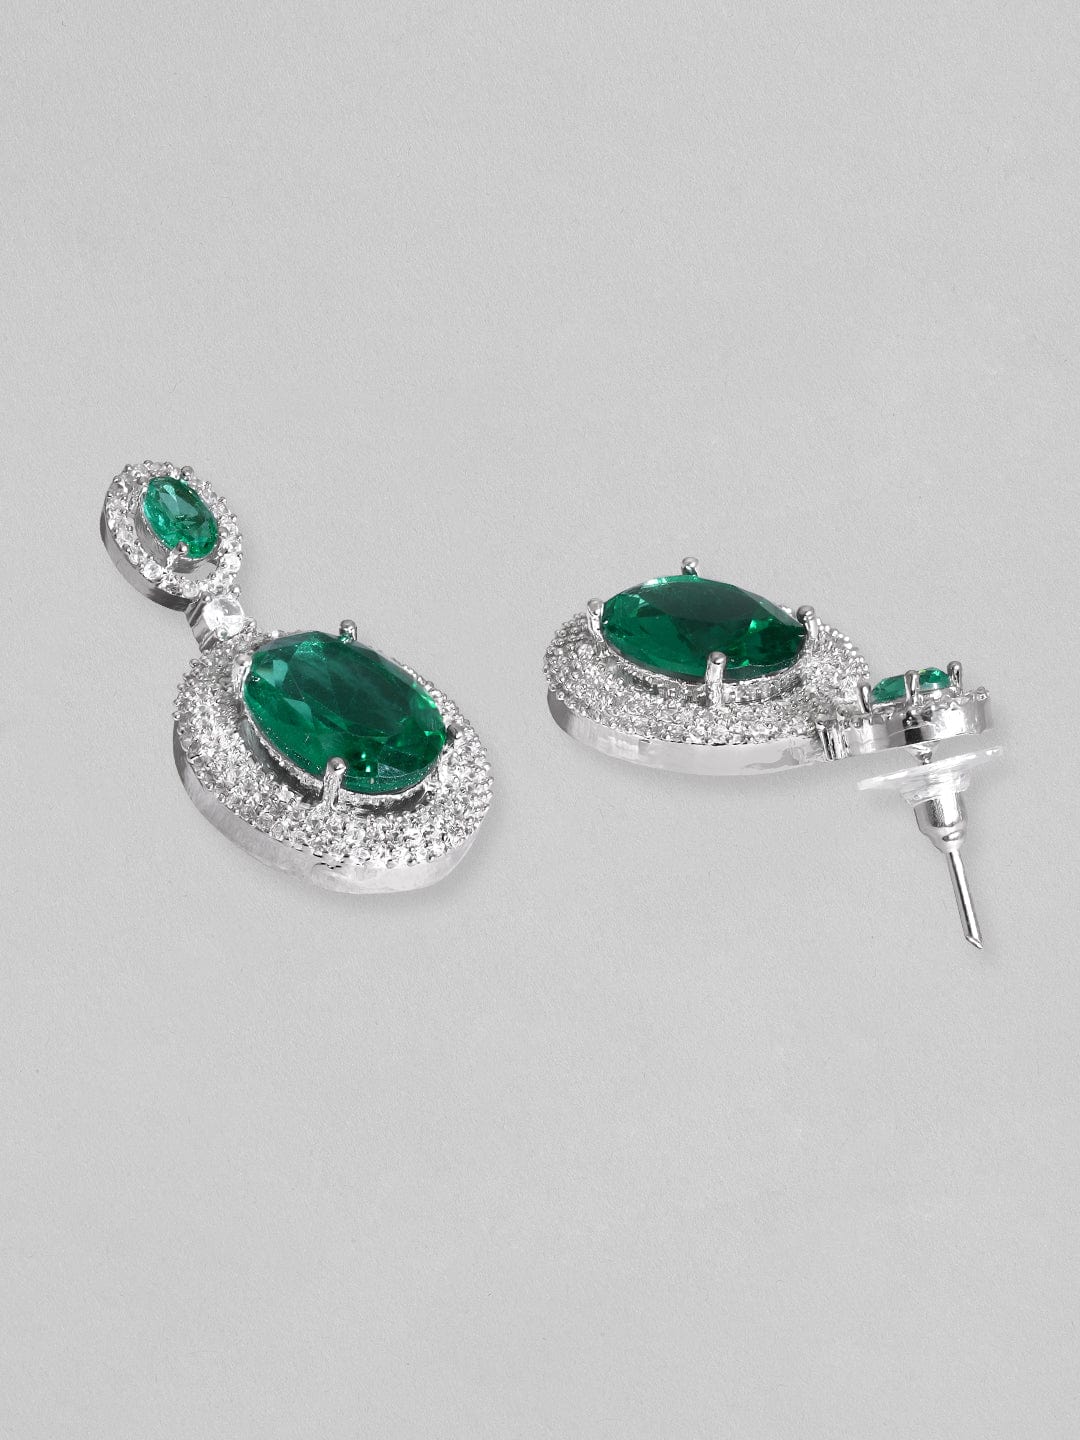 Rubans Rhodium Plated Premium White & Emerald Solitaire Zircons Pendant Necklace Set Necklace Set